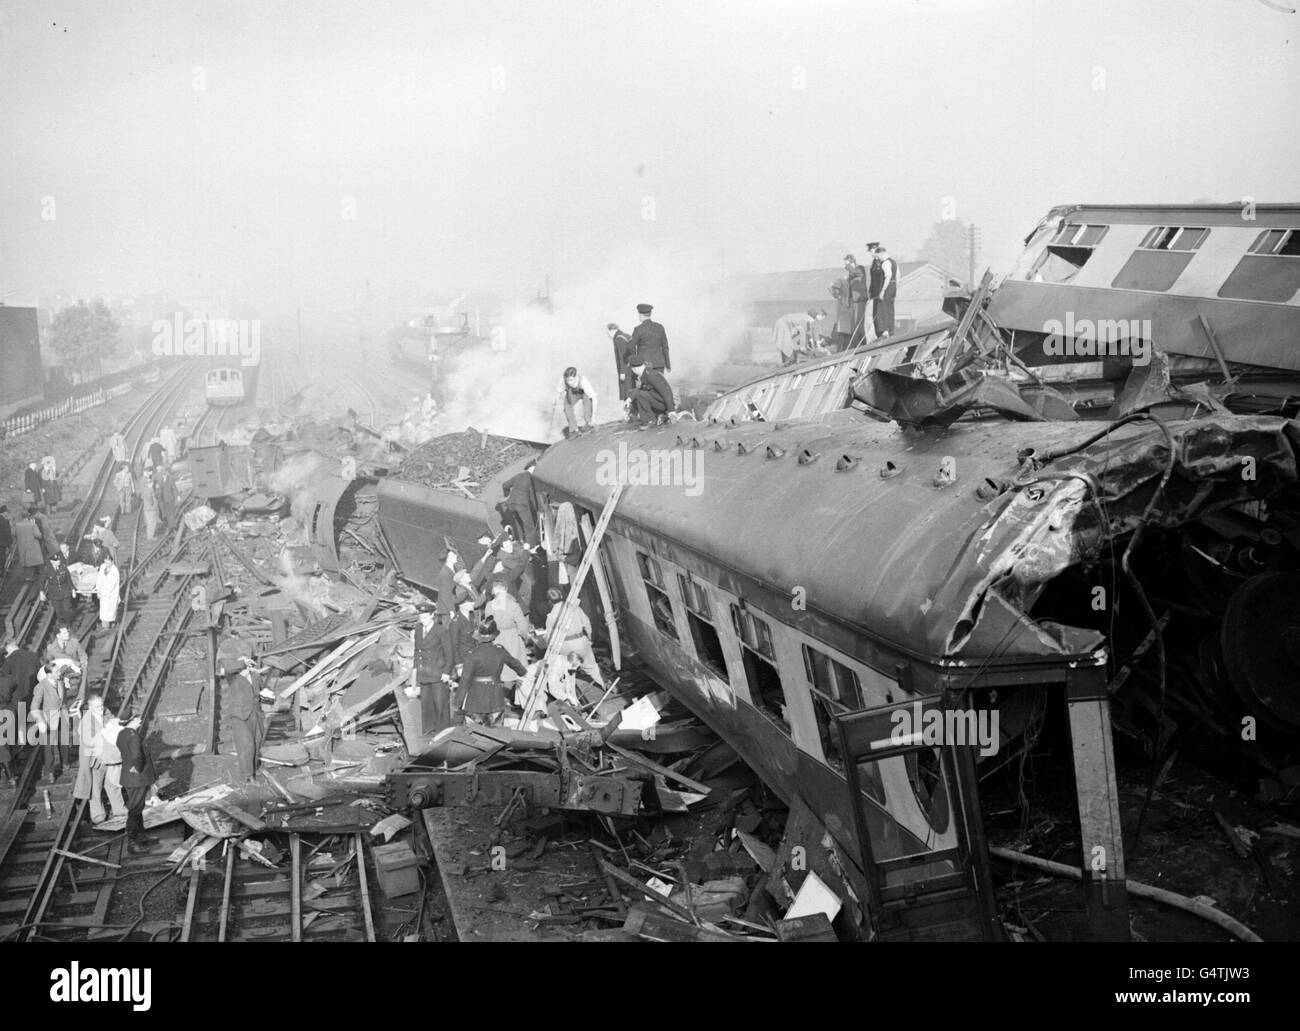 08/10/1952 - an diesem Tag in der Geschichte kollidieren drei Züge vor der Station Harrow und Wealdstone und töteten über 100, bei dem schlimmsten Zugunglück, den Großbritannien je hatte. Die Szene nach einem dreifachen Eisenbahnunfall 1952 an der Station Harrow und Wealdstone. Ein Expresszug von Perth fuhr auf einen lokalen Zug im Bahnhof, dann traf ein Expresszug von Euston nach Liverpool auf die entgleisten Reisebusse. Es wird angenommen, dass 100 Menschen ihr Leben verloren haben. Stockfoto